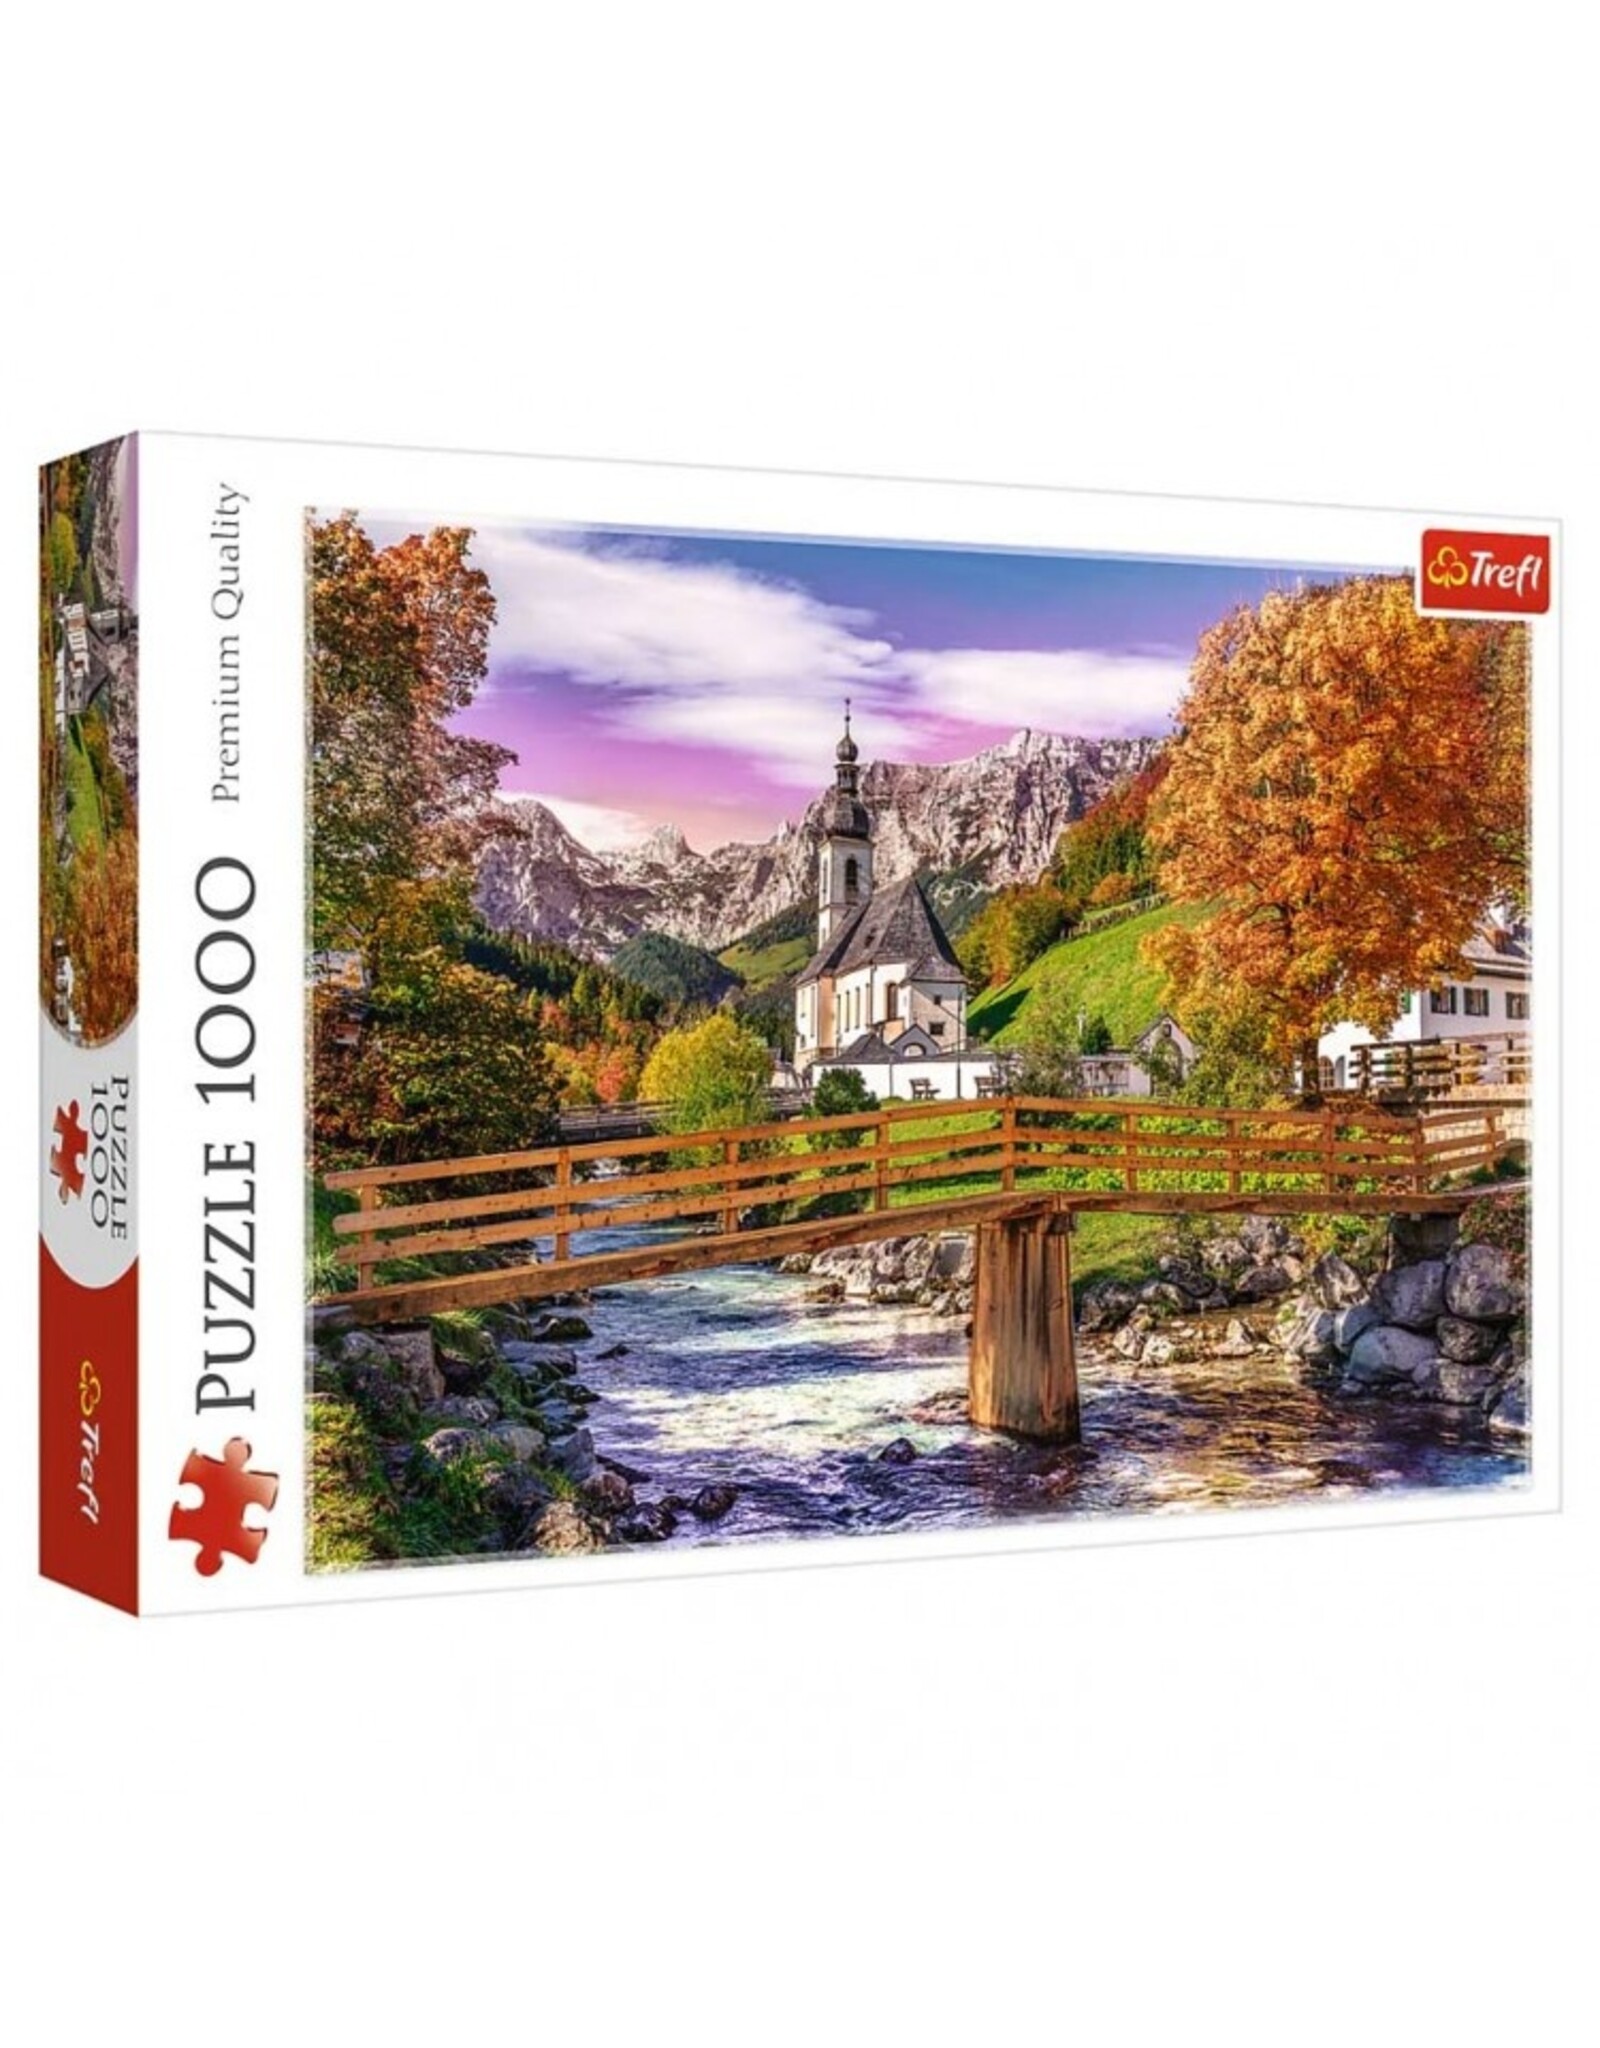 Trefl Puzzle: Autumn Bavaria 1000pc